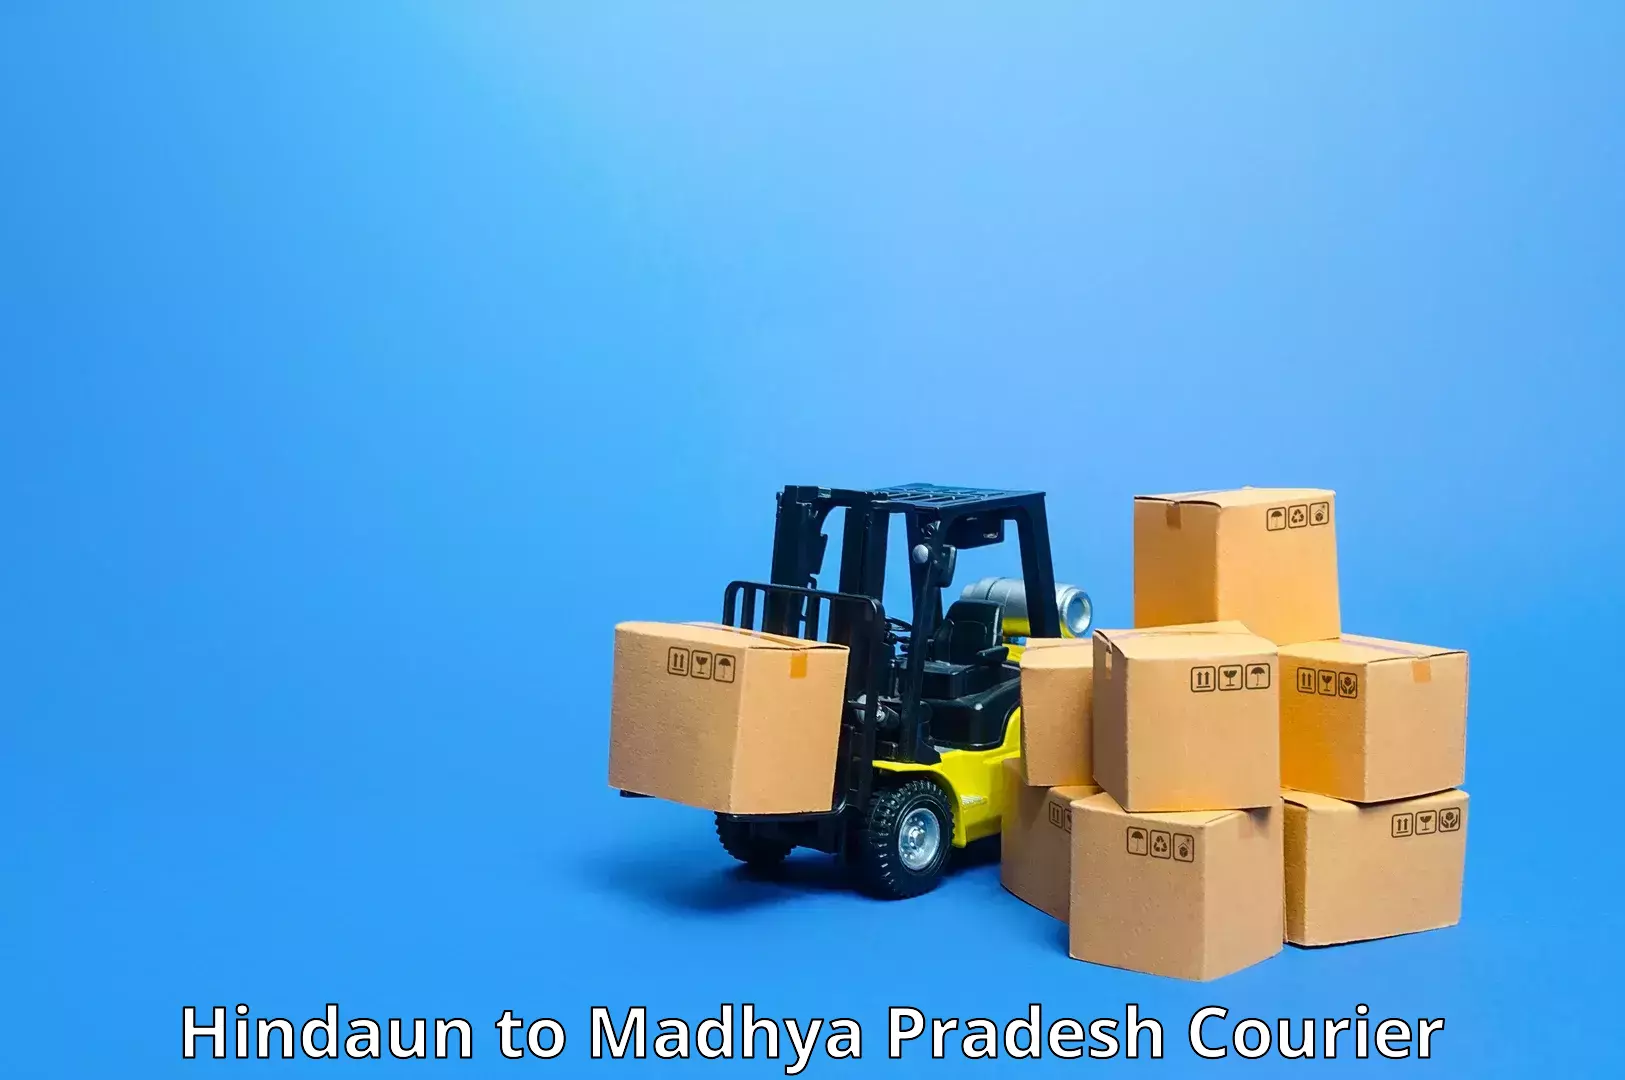 24/7 courier service Hindaun to Manawar